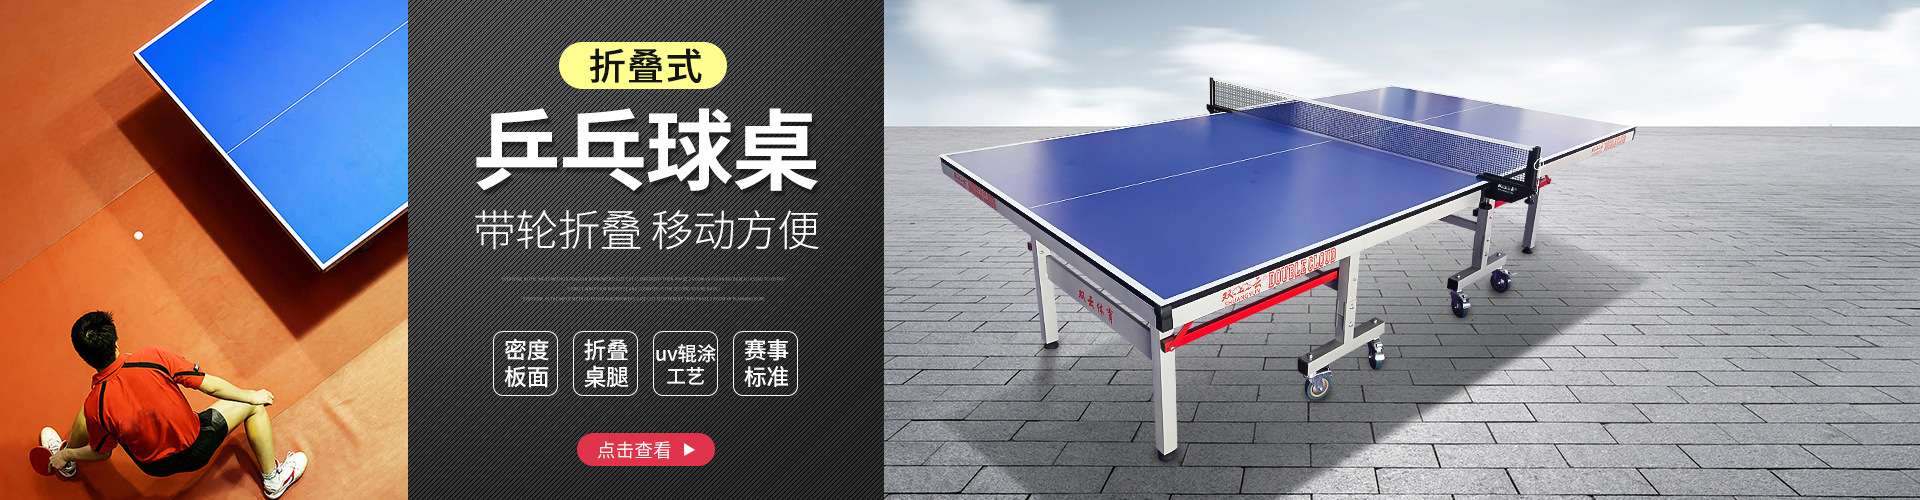 室内专业移动可折叠比赛标准乒乓球桌